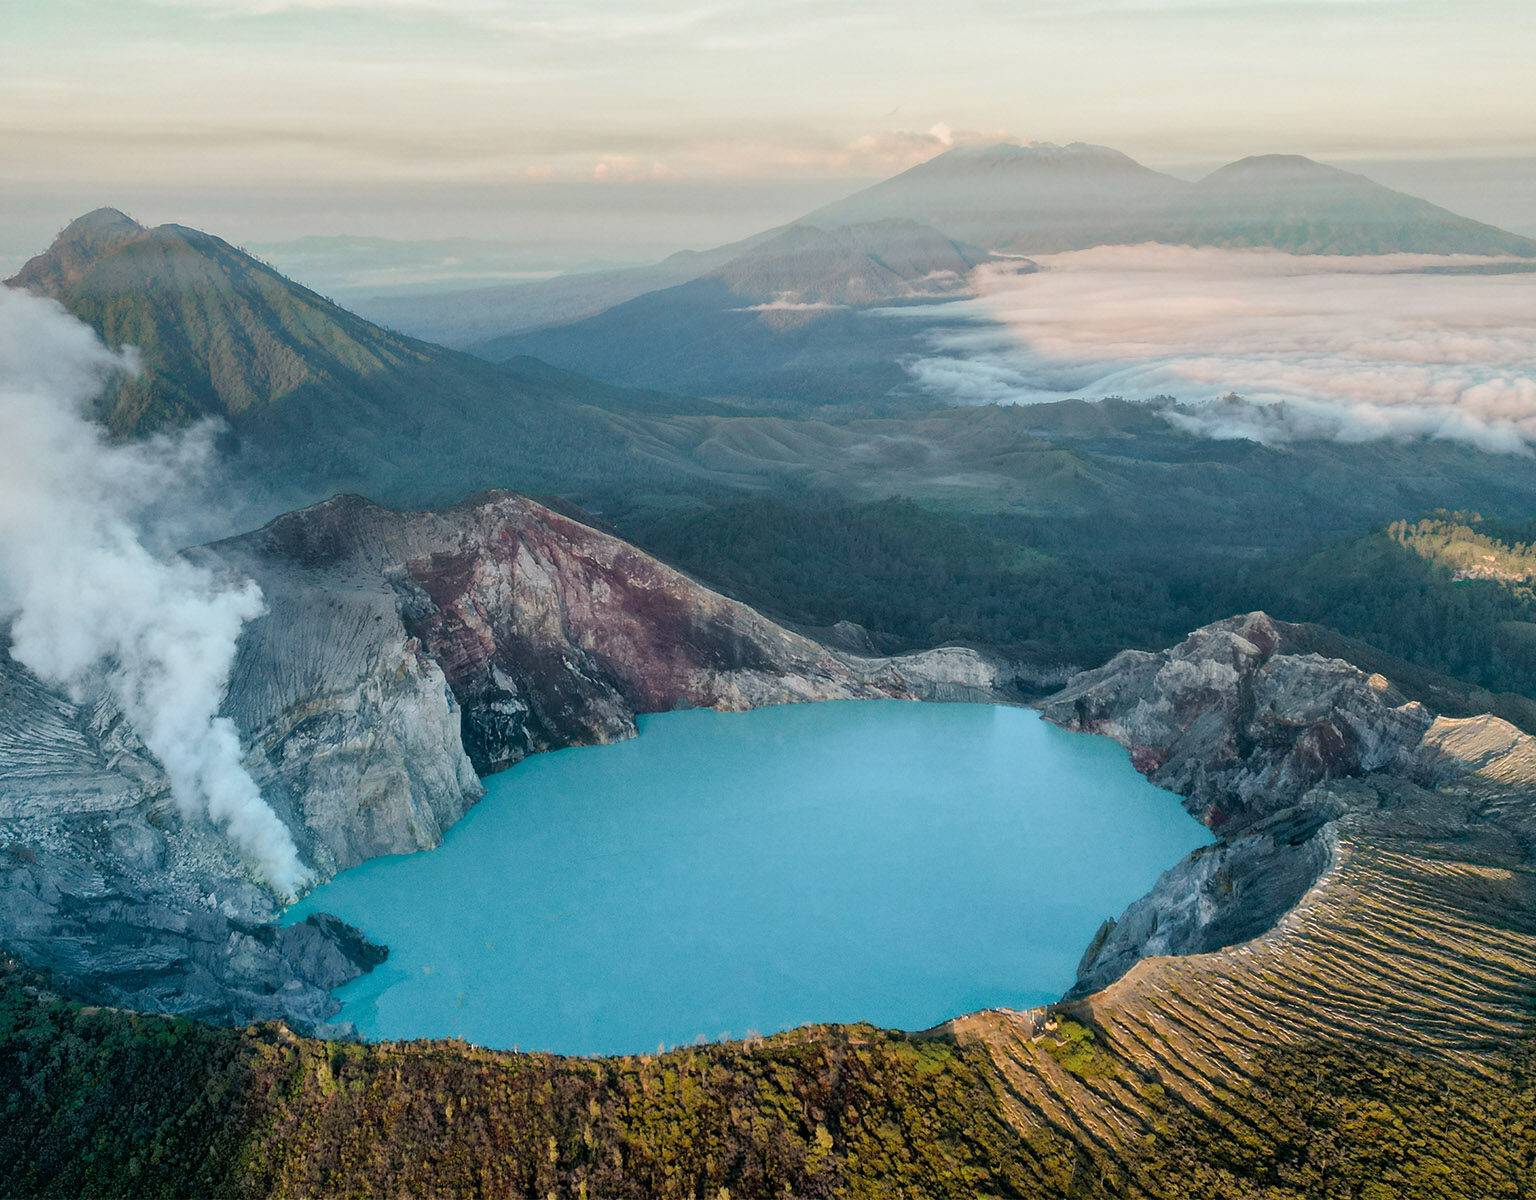 Ein türkisblauer See im Vulkan Ijen in Java, im Hintergrund begrünte Berge.